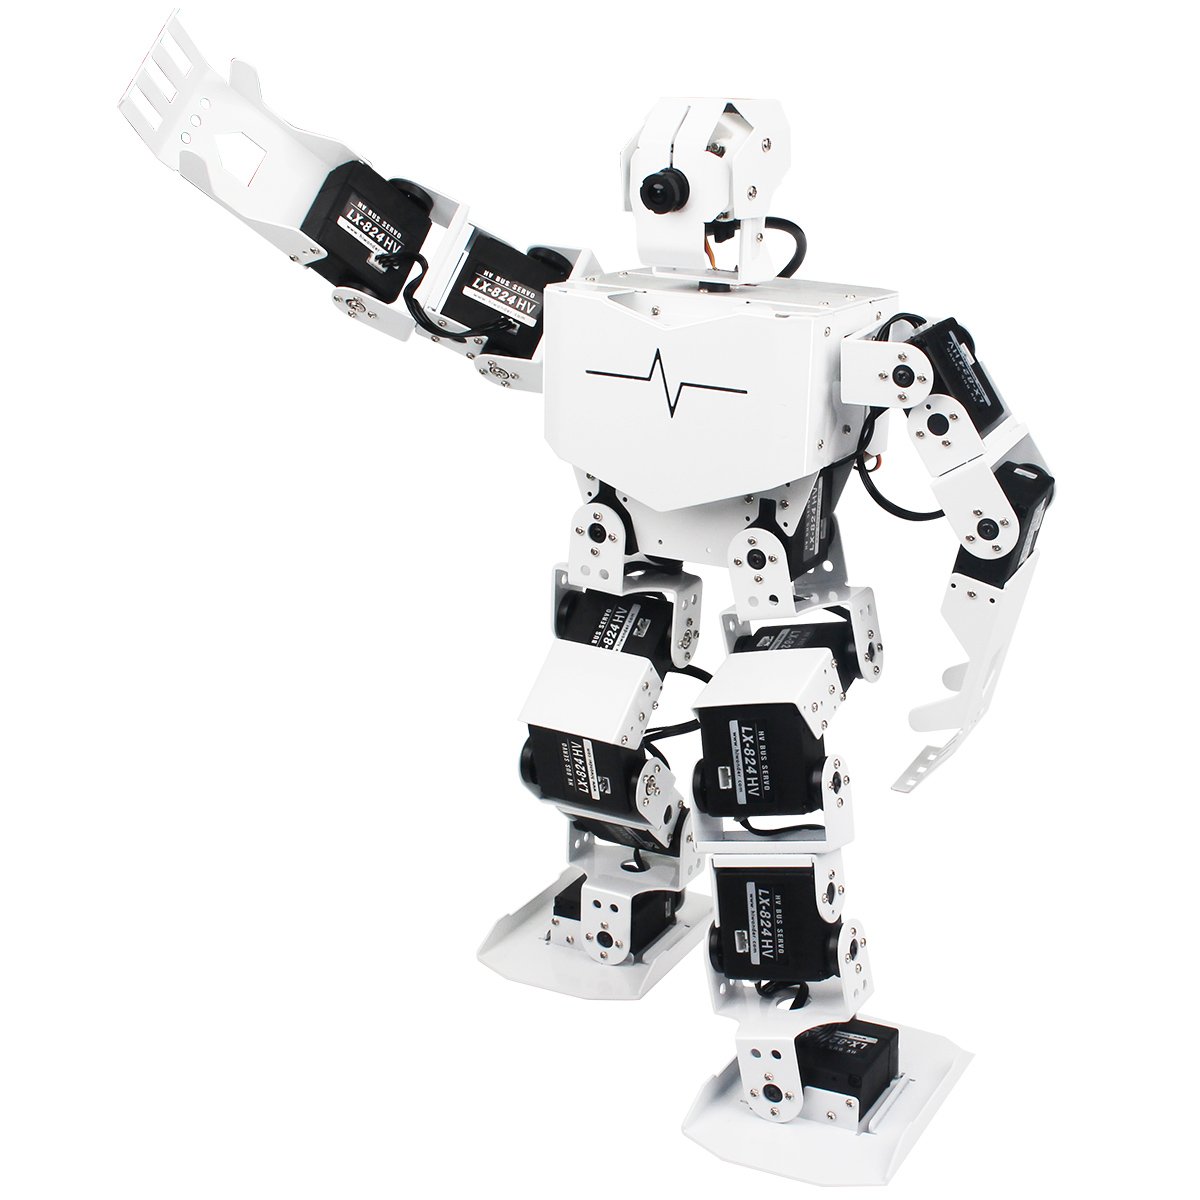 Базовый робототехнический набор для изучения систем управления робототехническими комплексами и андроидными роботами "Сережа ИН". Базовый комплект на Raspbery Pi